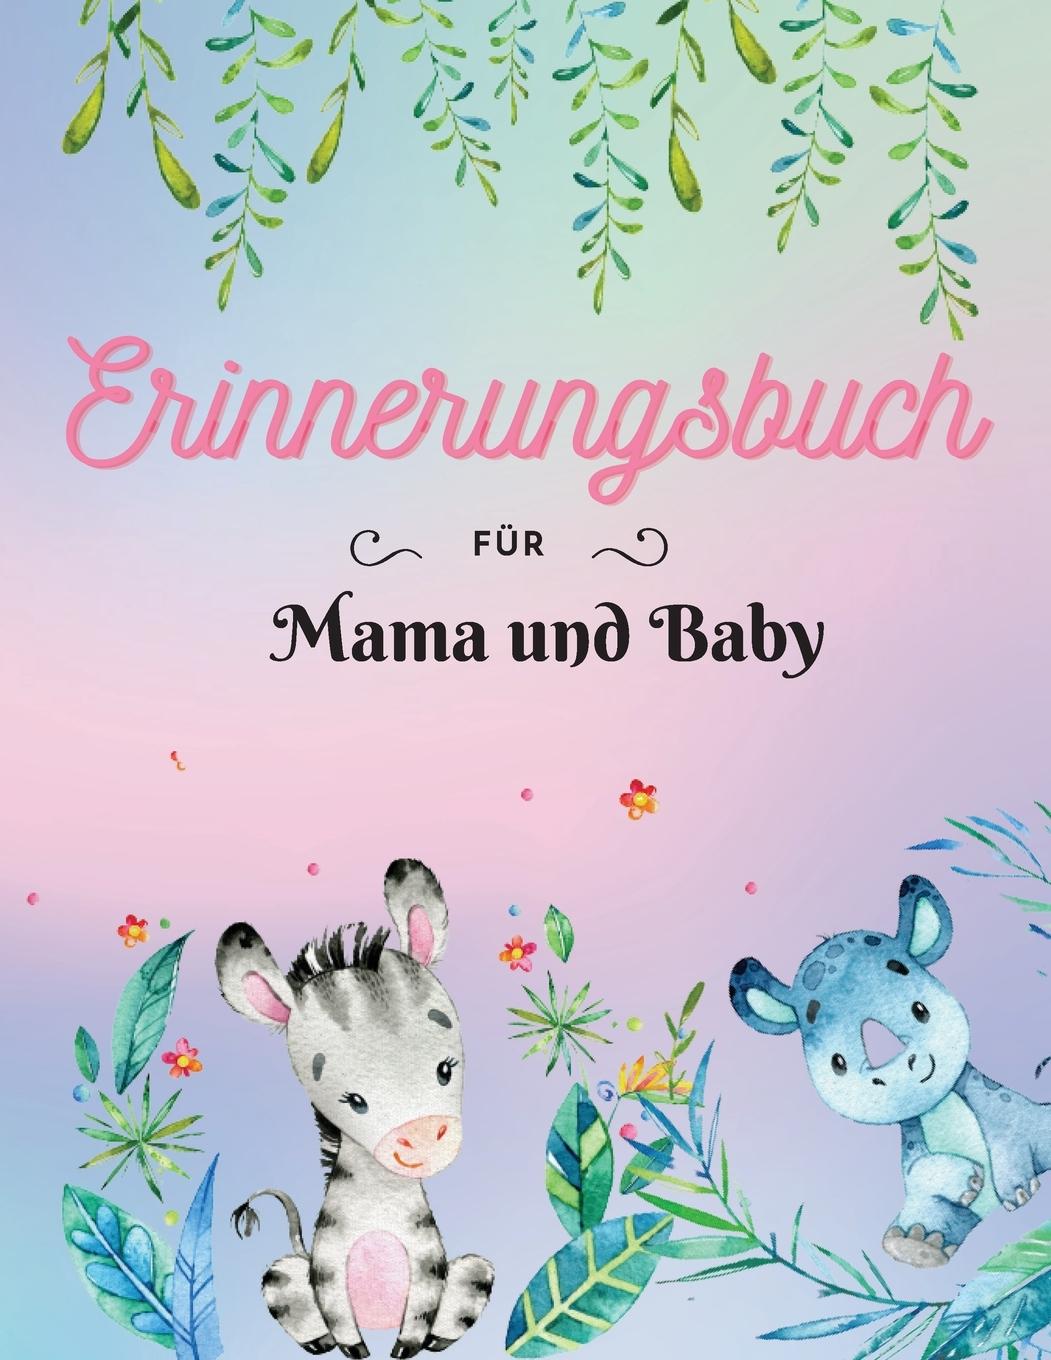 Книга Erinnerungsbuch fur Mama und Baby 